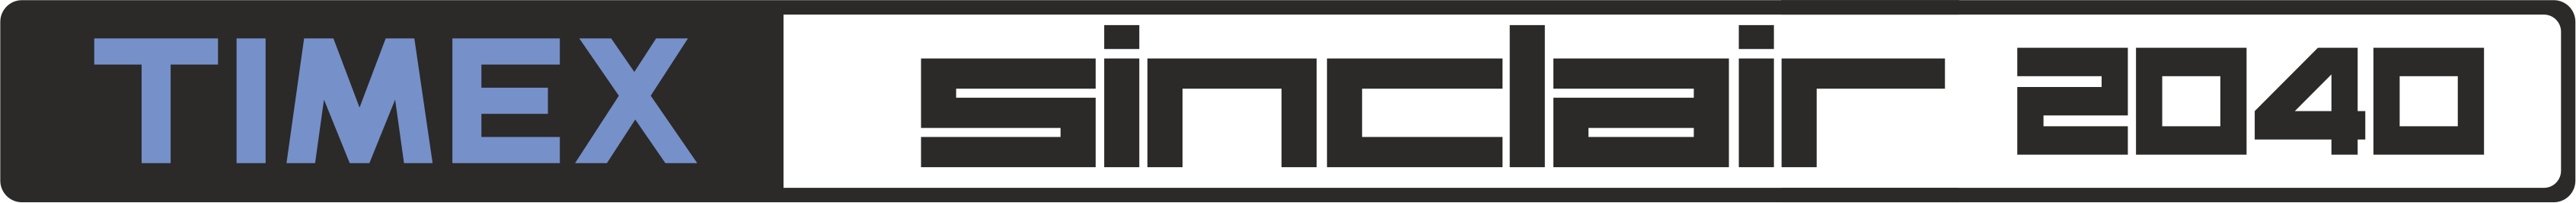 Timex Sinclair TS-2040: logo